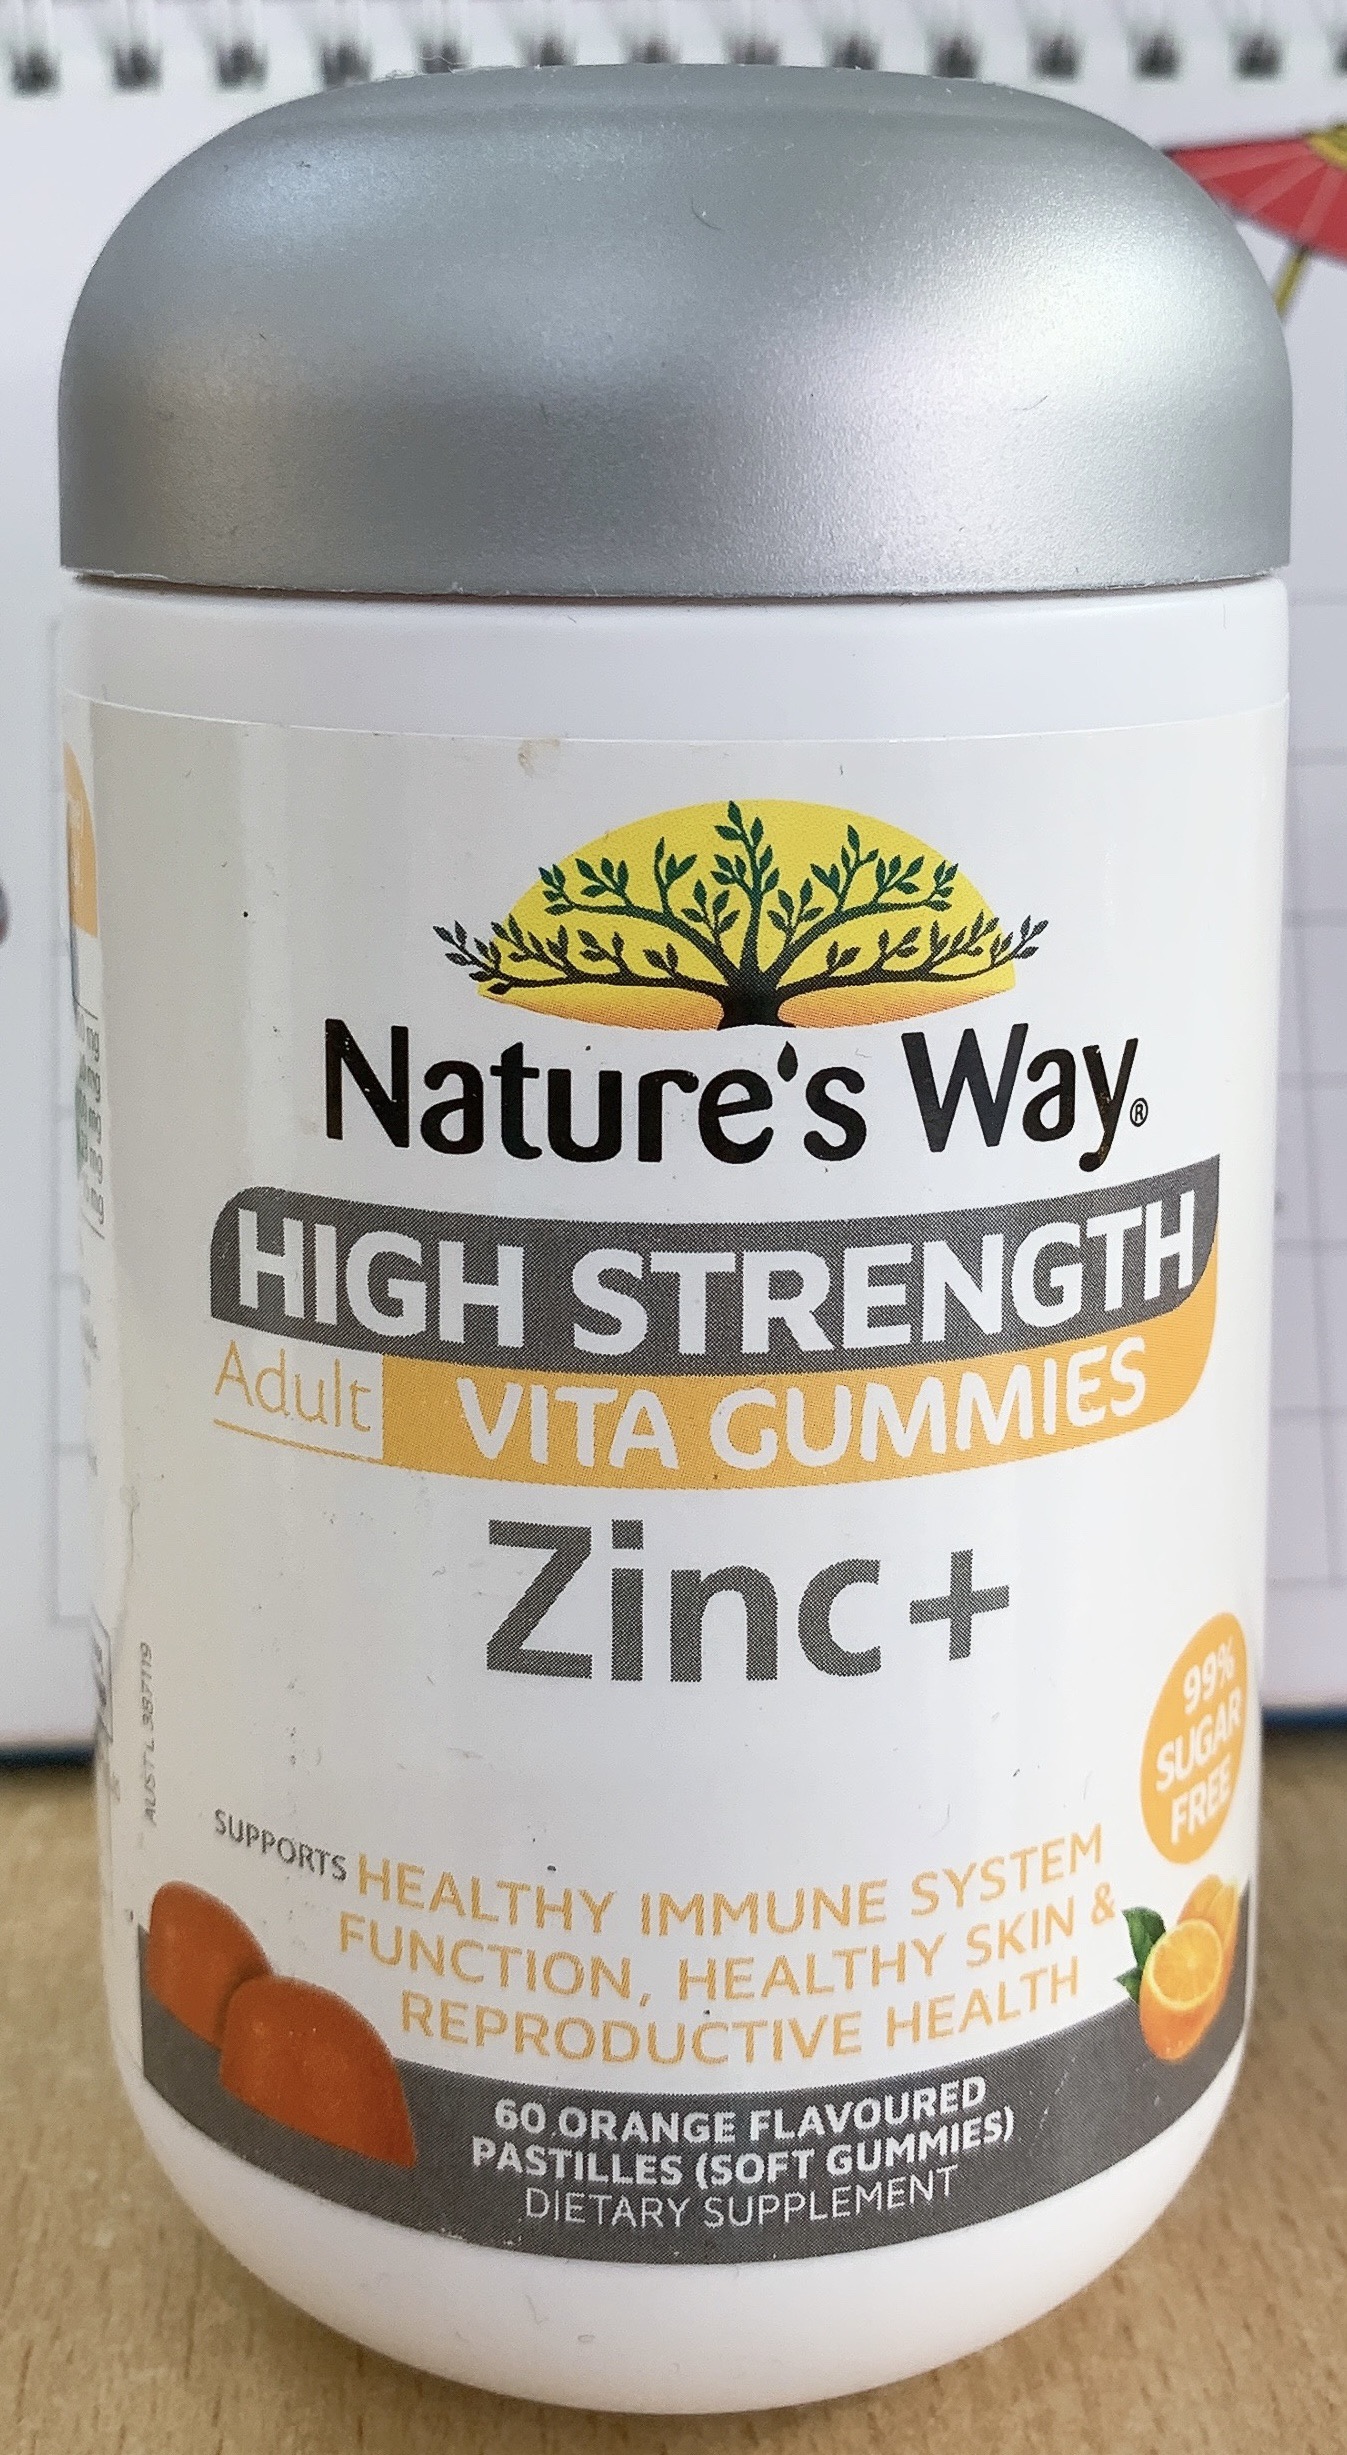 Kẹo dẻo hỗ trợ chức năng hệ thống miễn dịch Vita Gummies Zinc+